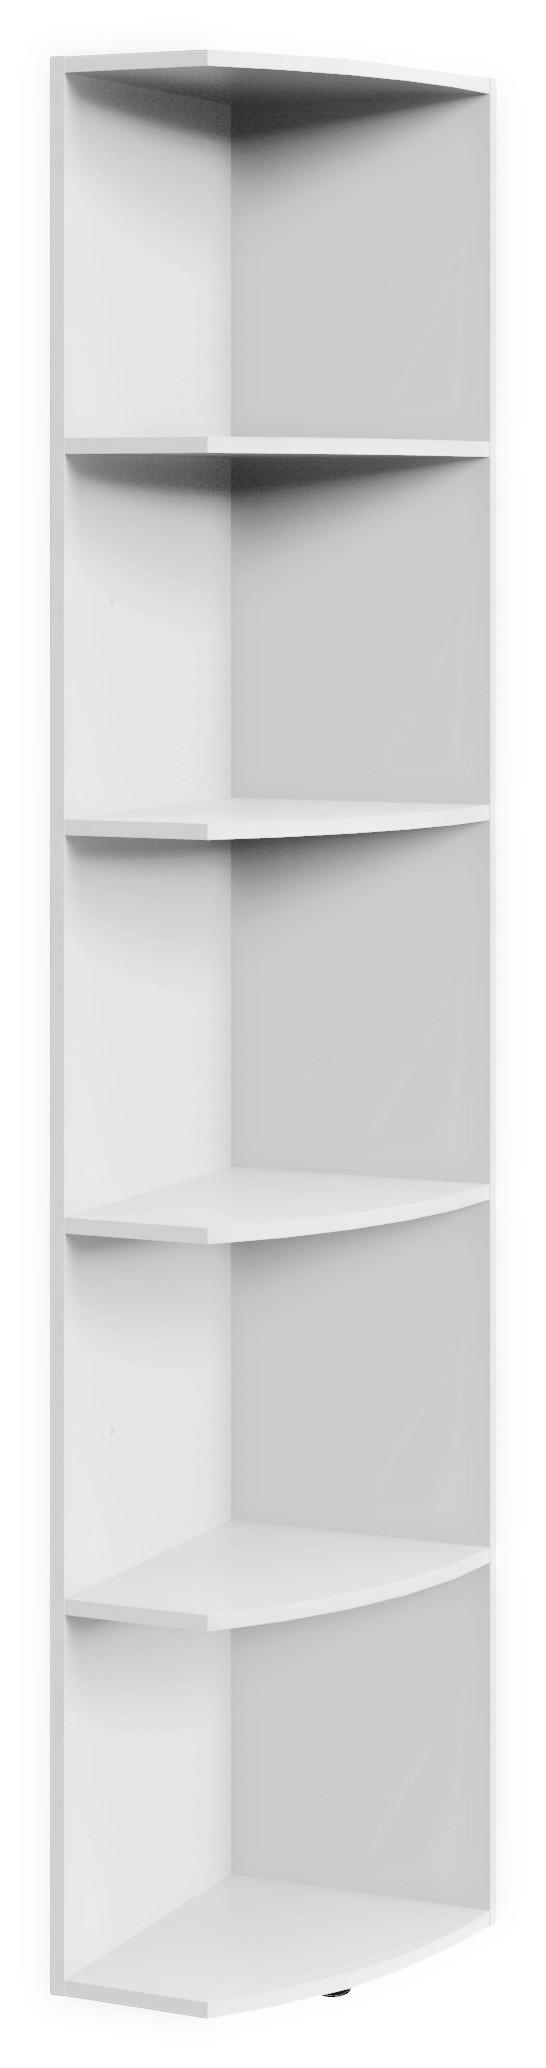 ABSCHLUSSREGAL Weiß  - Weiß, KONVENTIONELL, Holzwerkstoff (30/185/38cm) - Xora